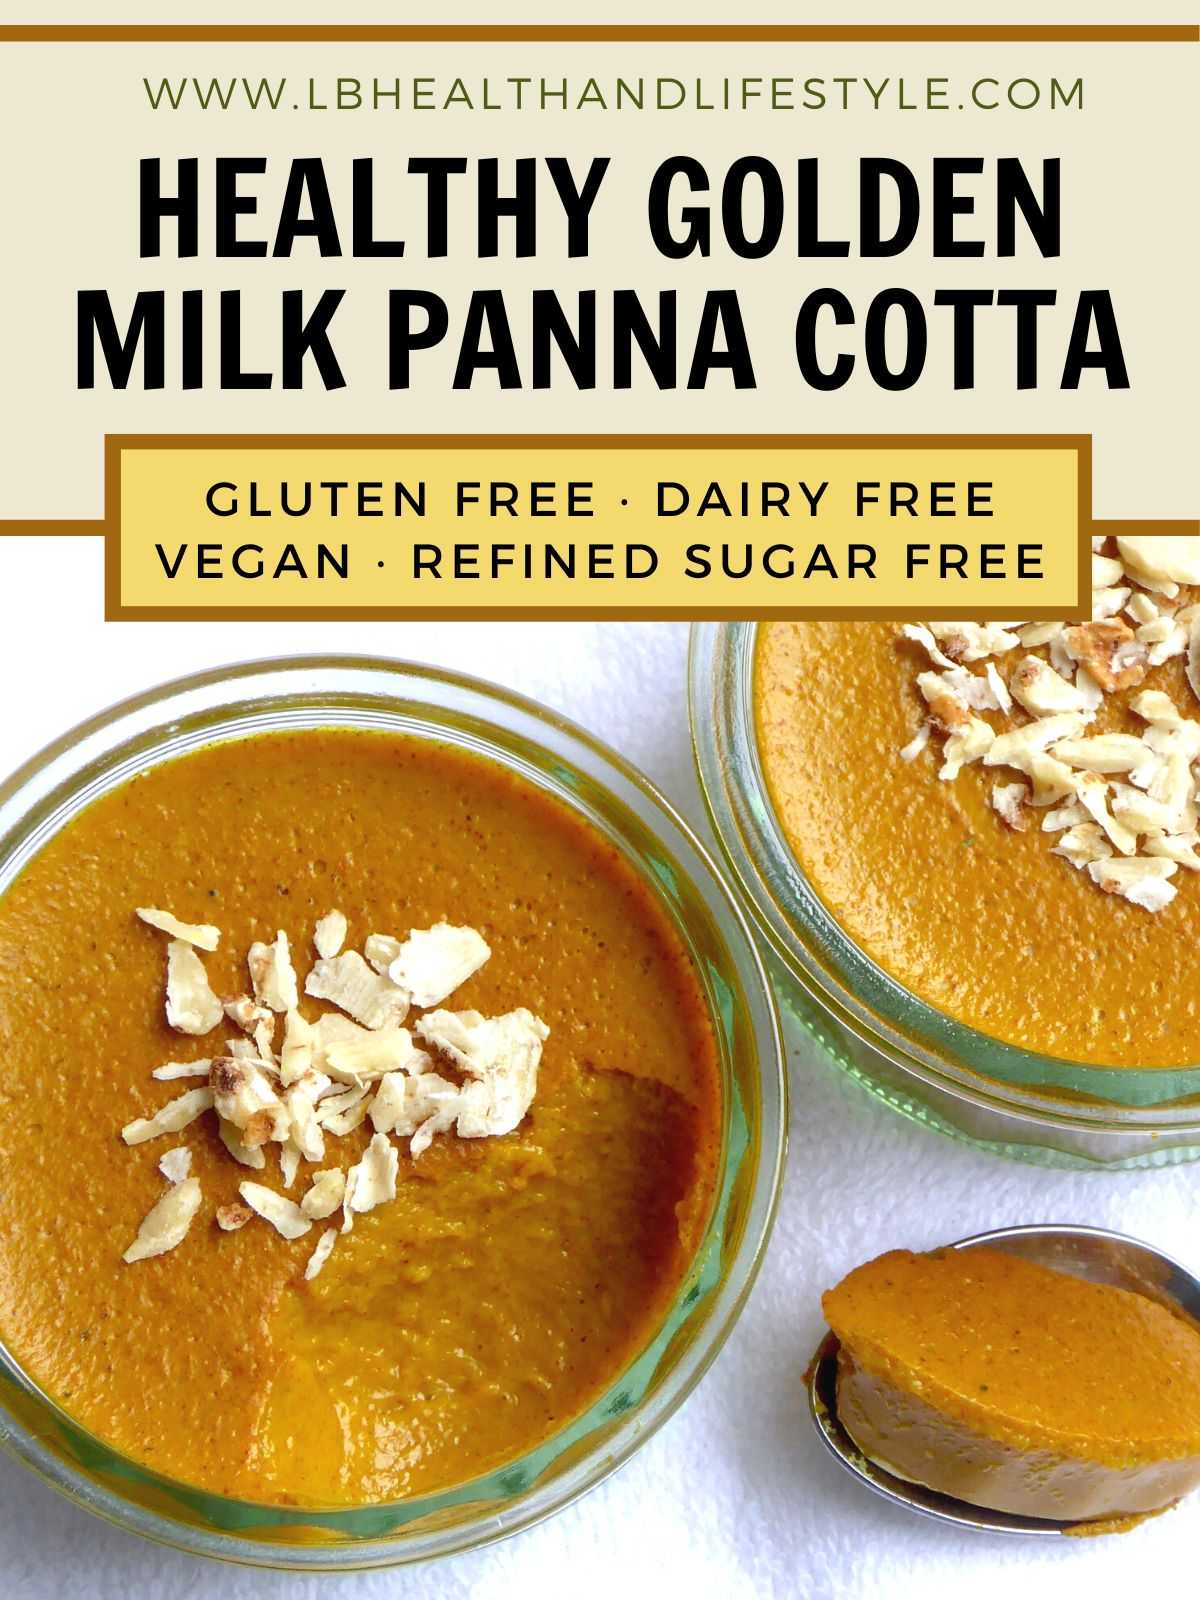 healthy golden milk Panna Cotta gluten free dairy free vegan refined sugar free